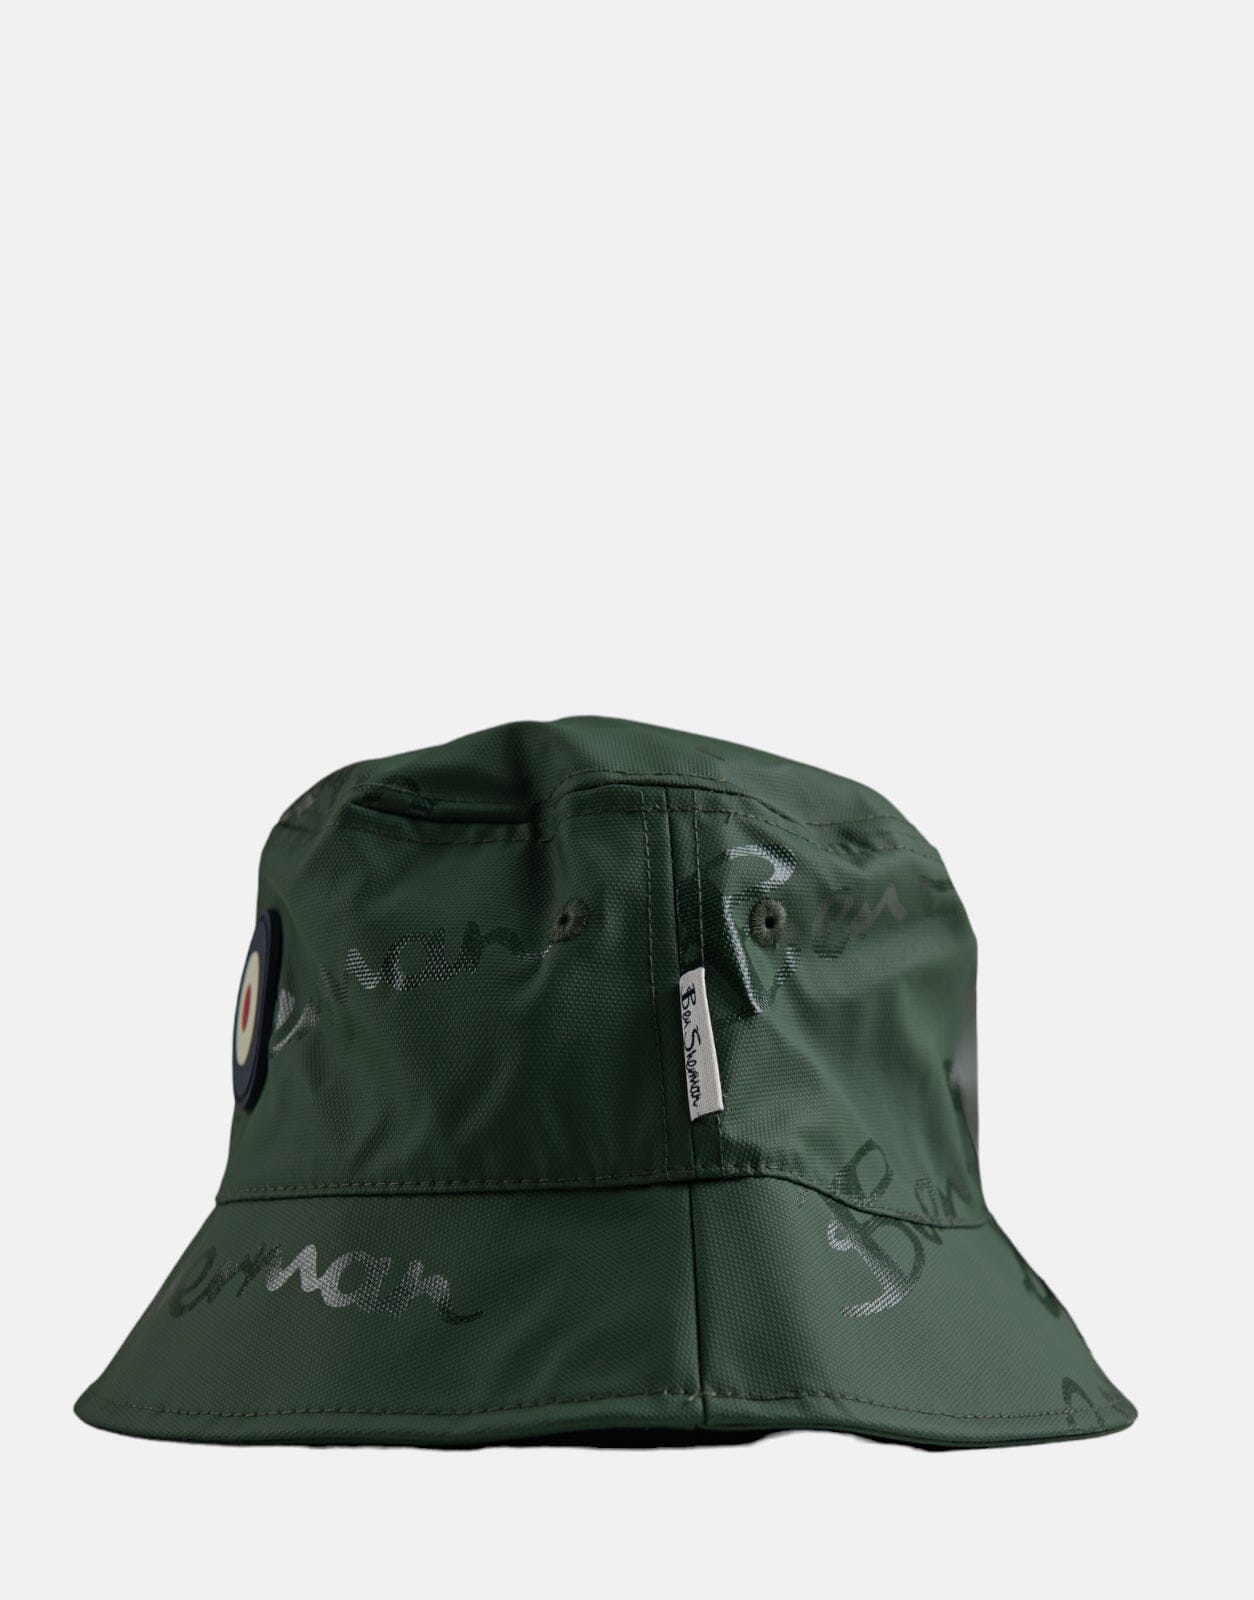 Ben Sherman Wax Target Bucket Hat DKO - Subwear